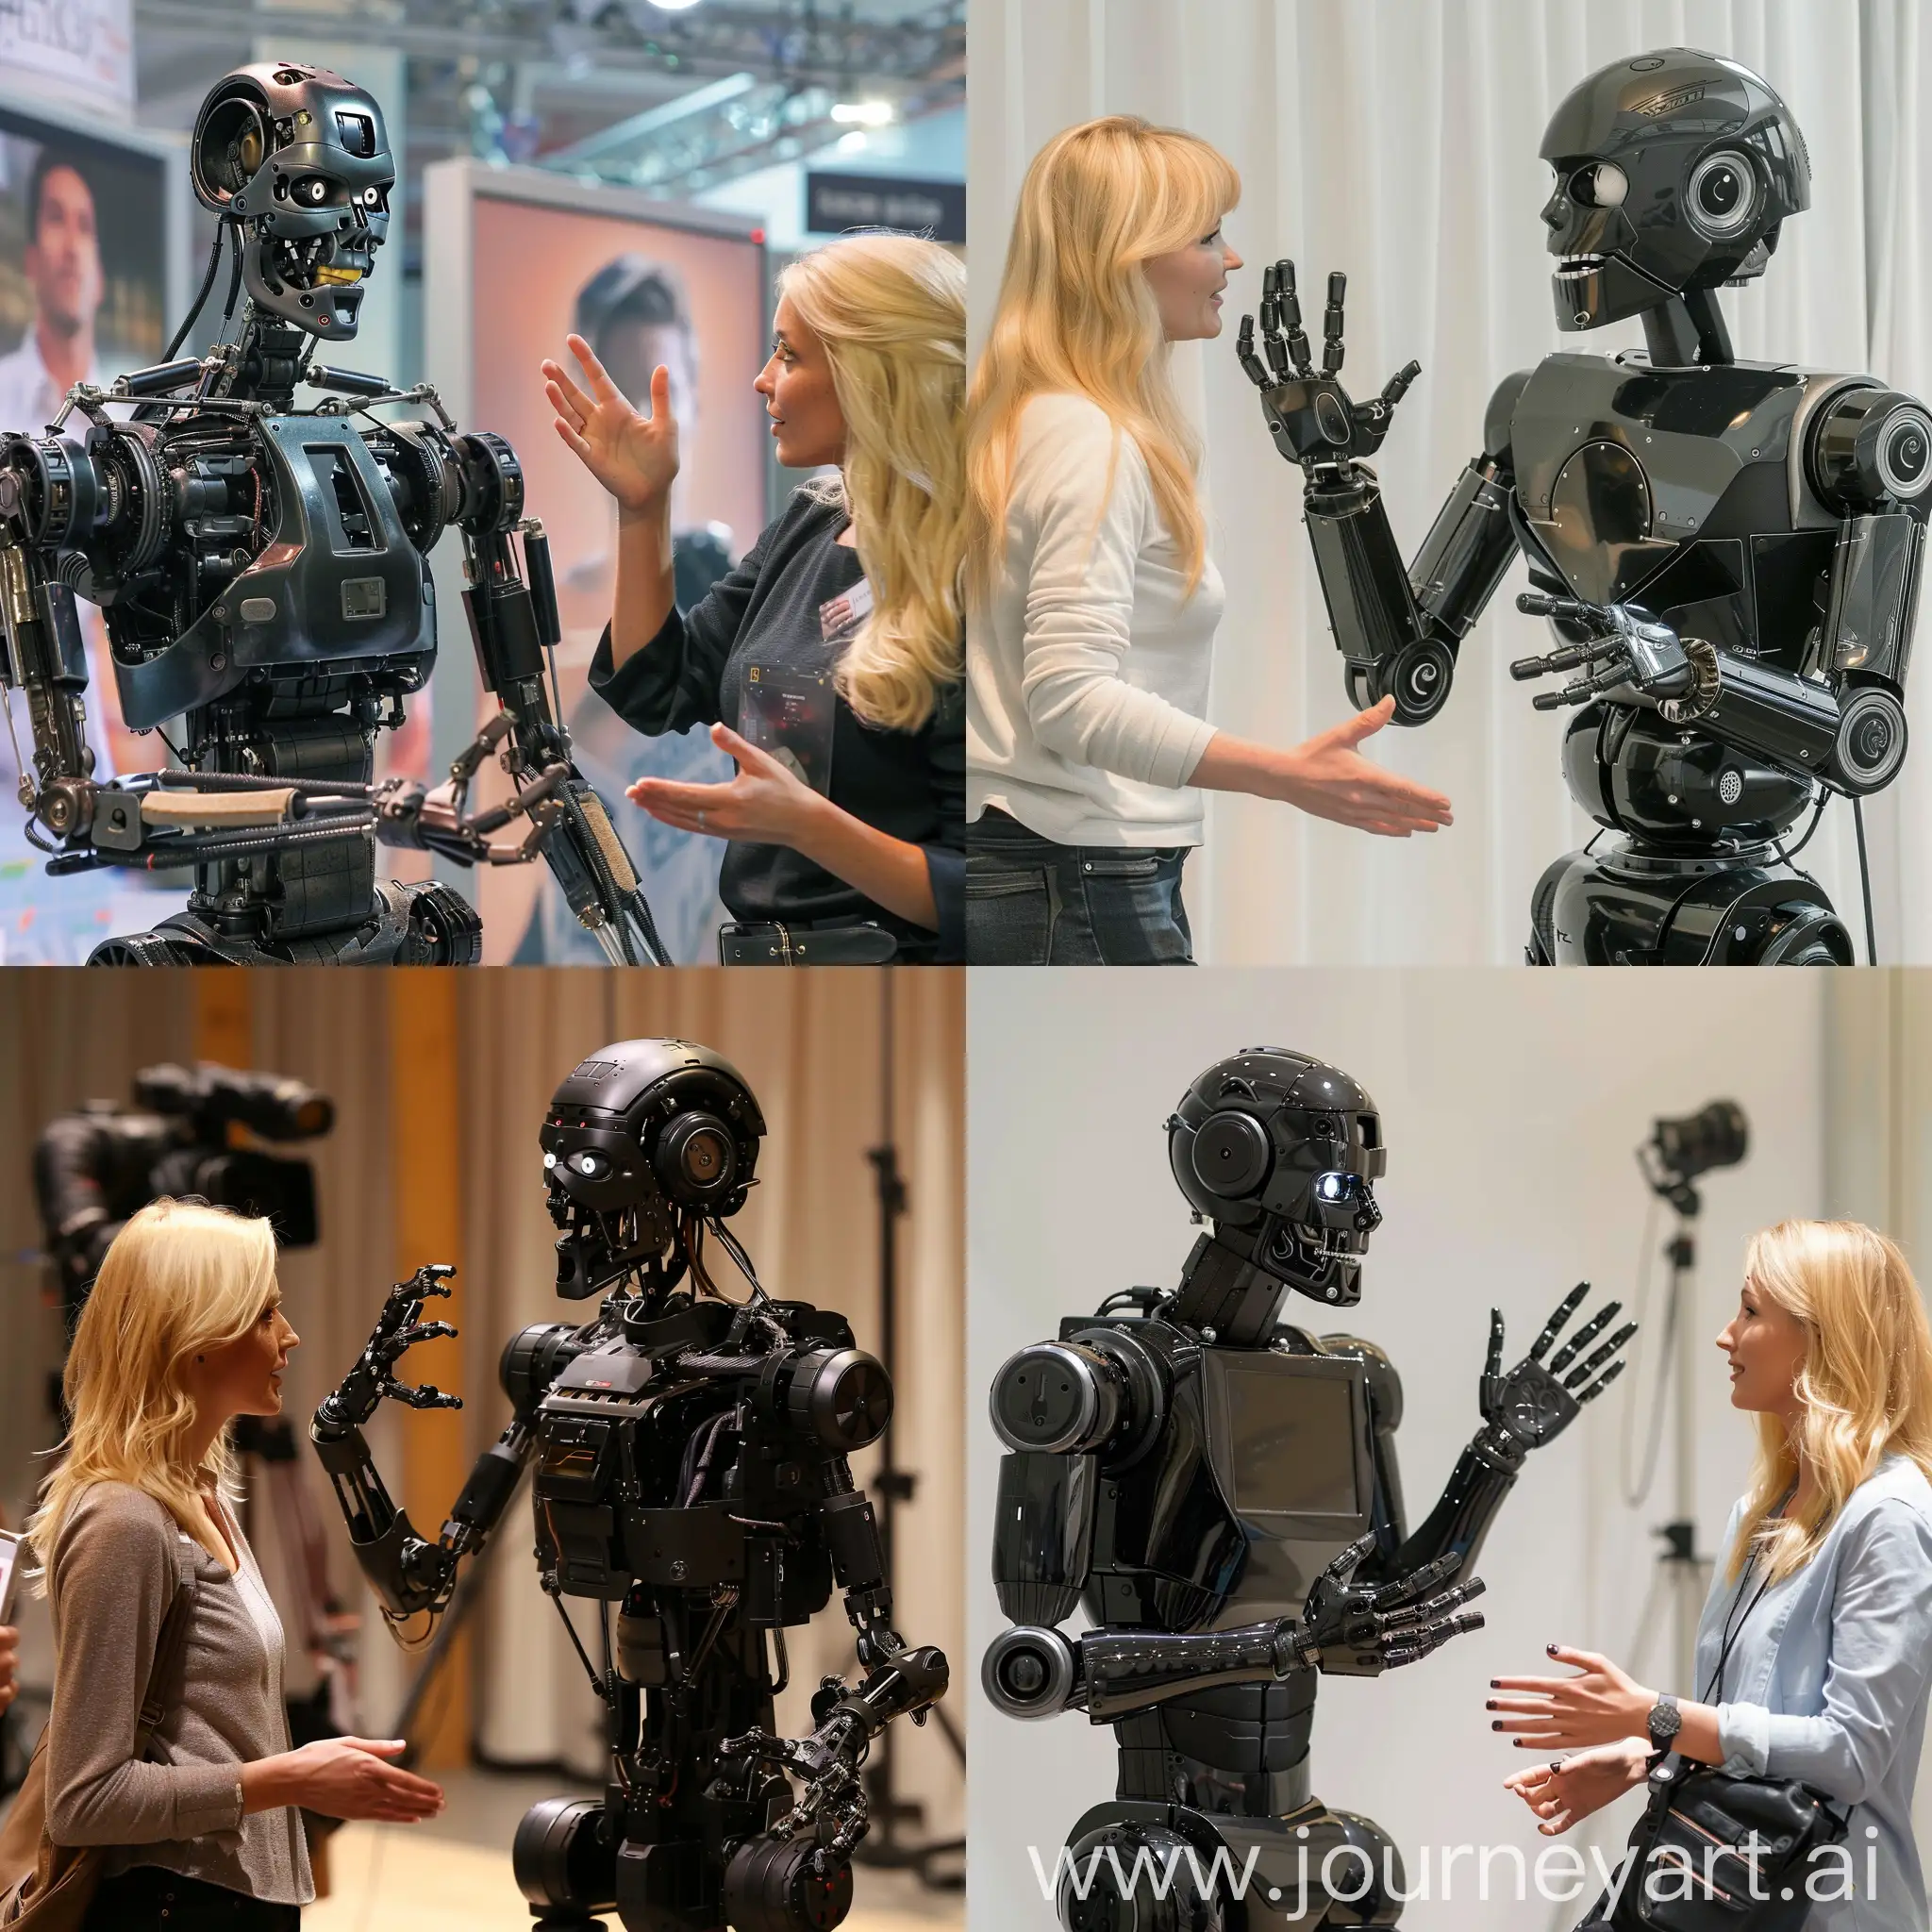 Humanoid-Robot-Interviewed-by-Blonde-Female-Journalist